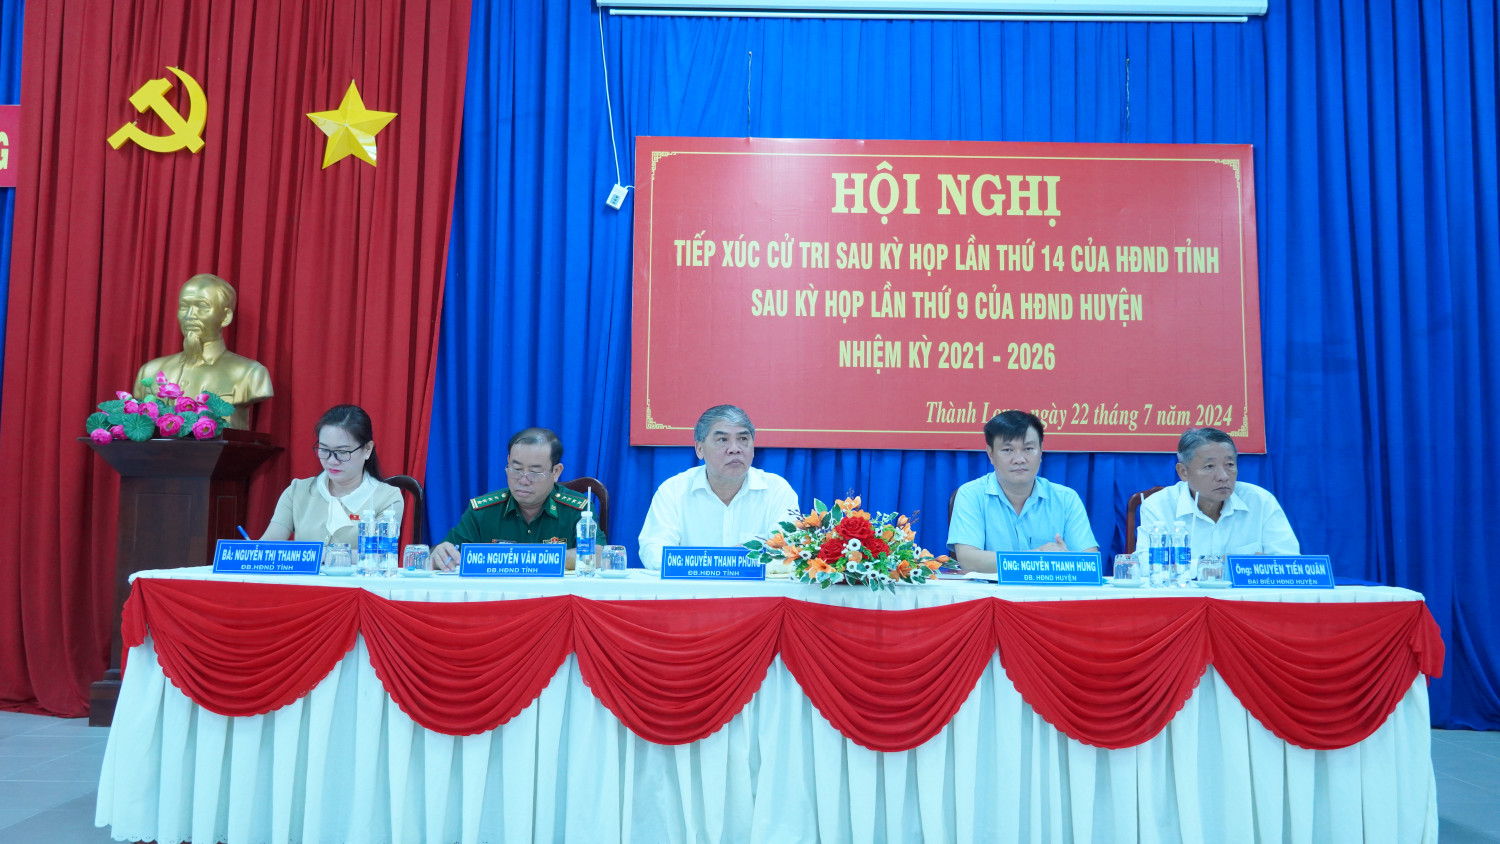 Phó Chủ tịch HĐND tỉnh Nguyễn Thanh Phong cùng tổ đại biểu HĐND tỉnh, huyện tiếp xúc cử tri xã Thành Long